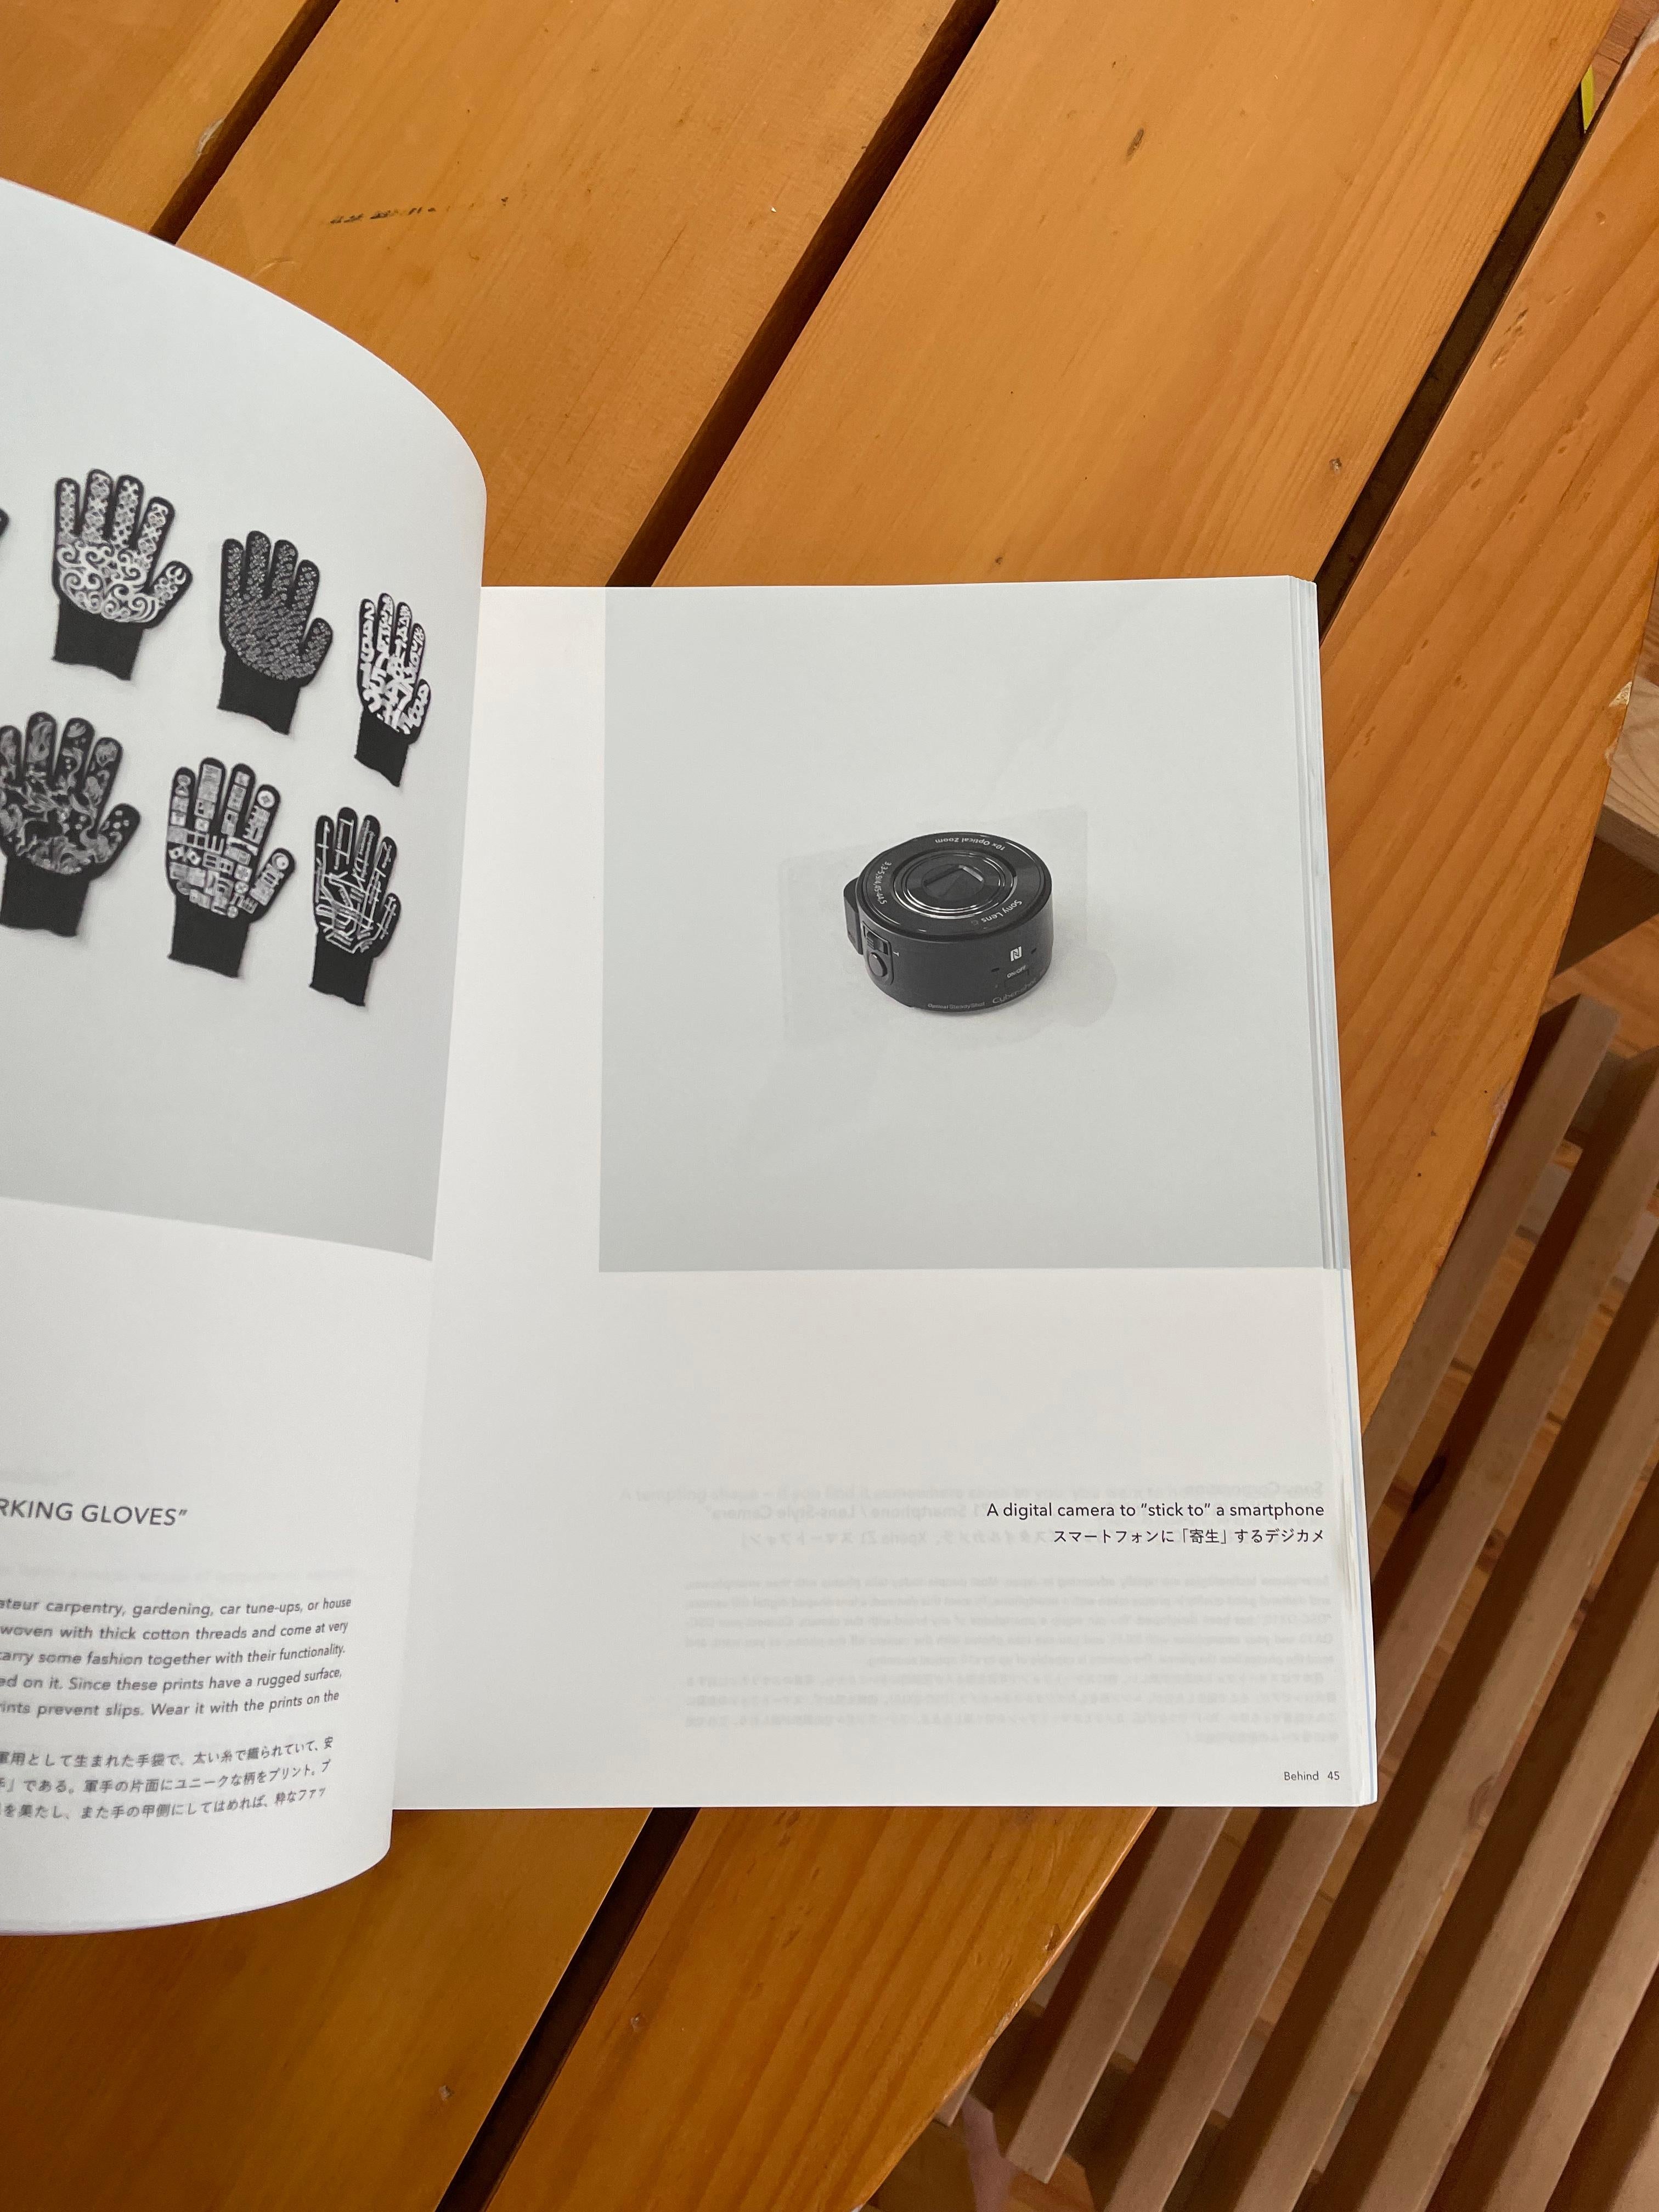 Incroyable catalogue pour une exposition de design à Singapour en 2014 qui a été financée par JETRO et organisée par Nendo.
L'exposition s'articule autour de trois thèmes  